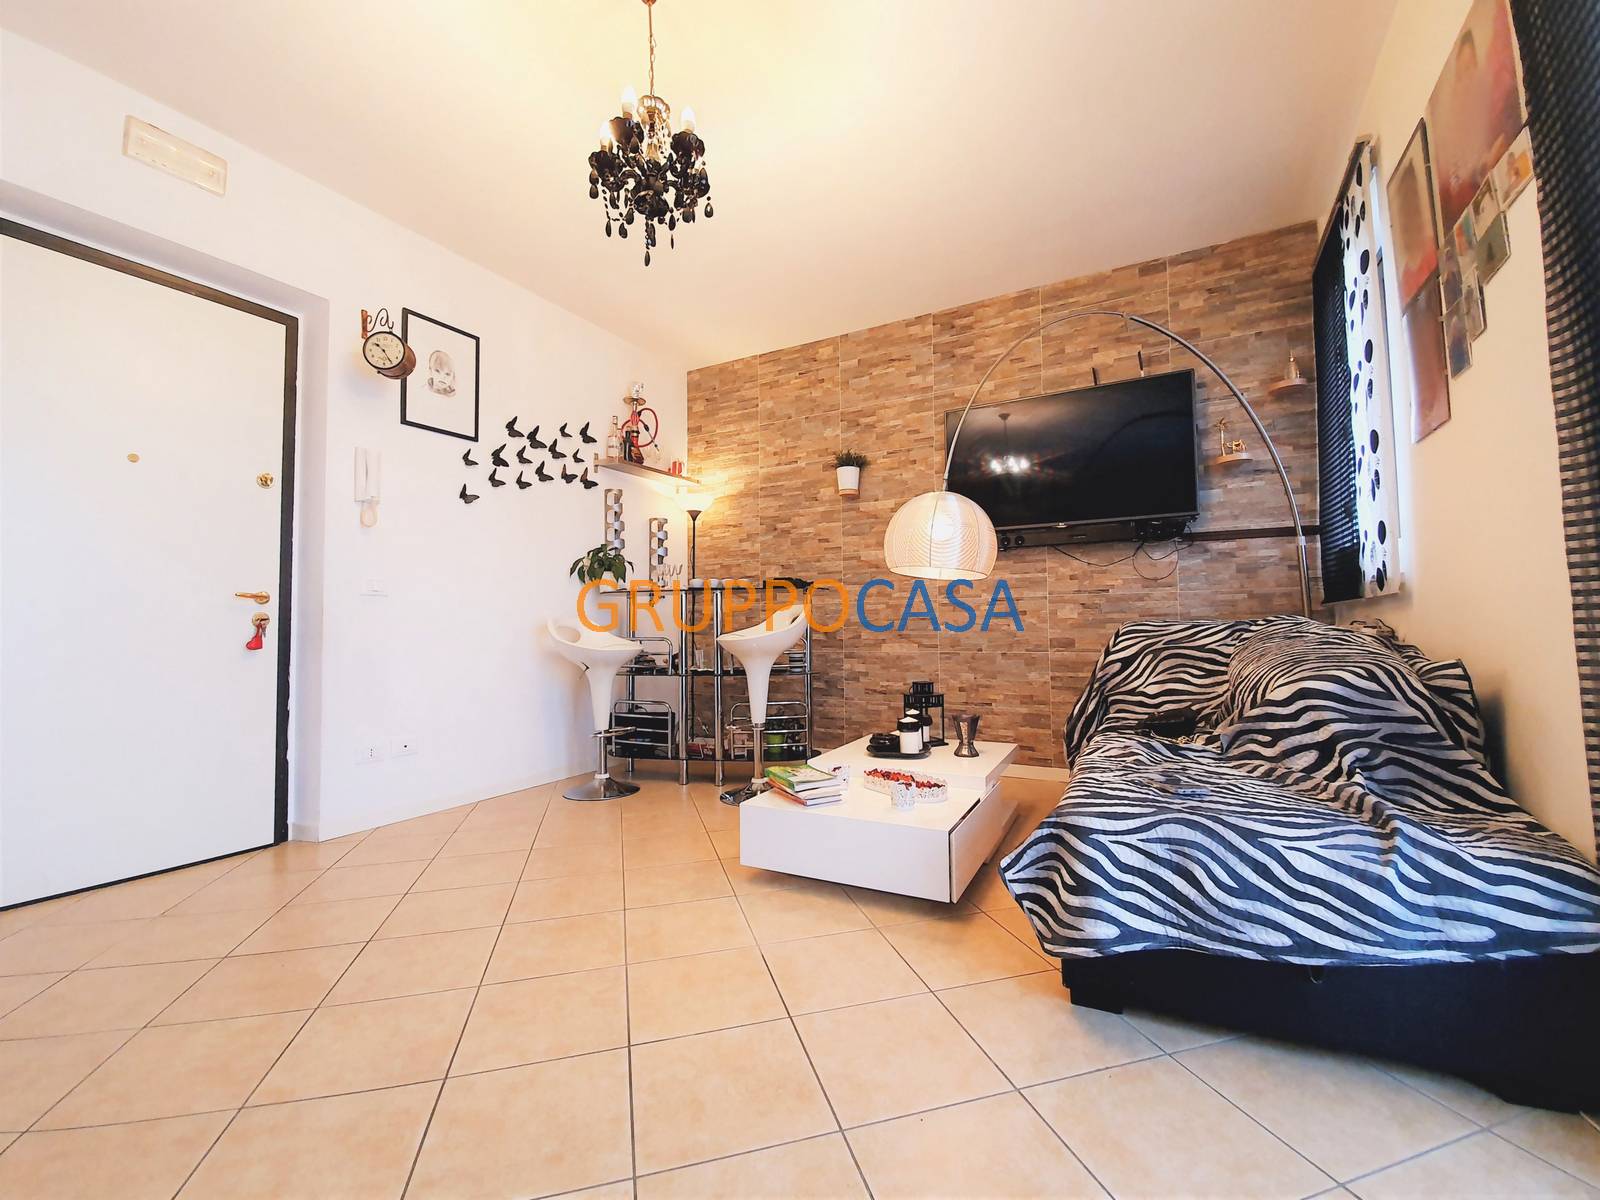 Appartamento in vendita a Altopascio, 3 locali, zona Località: Centro, prezzo € 125.000 | PortaleAgenzieImmobiliari.it